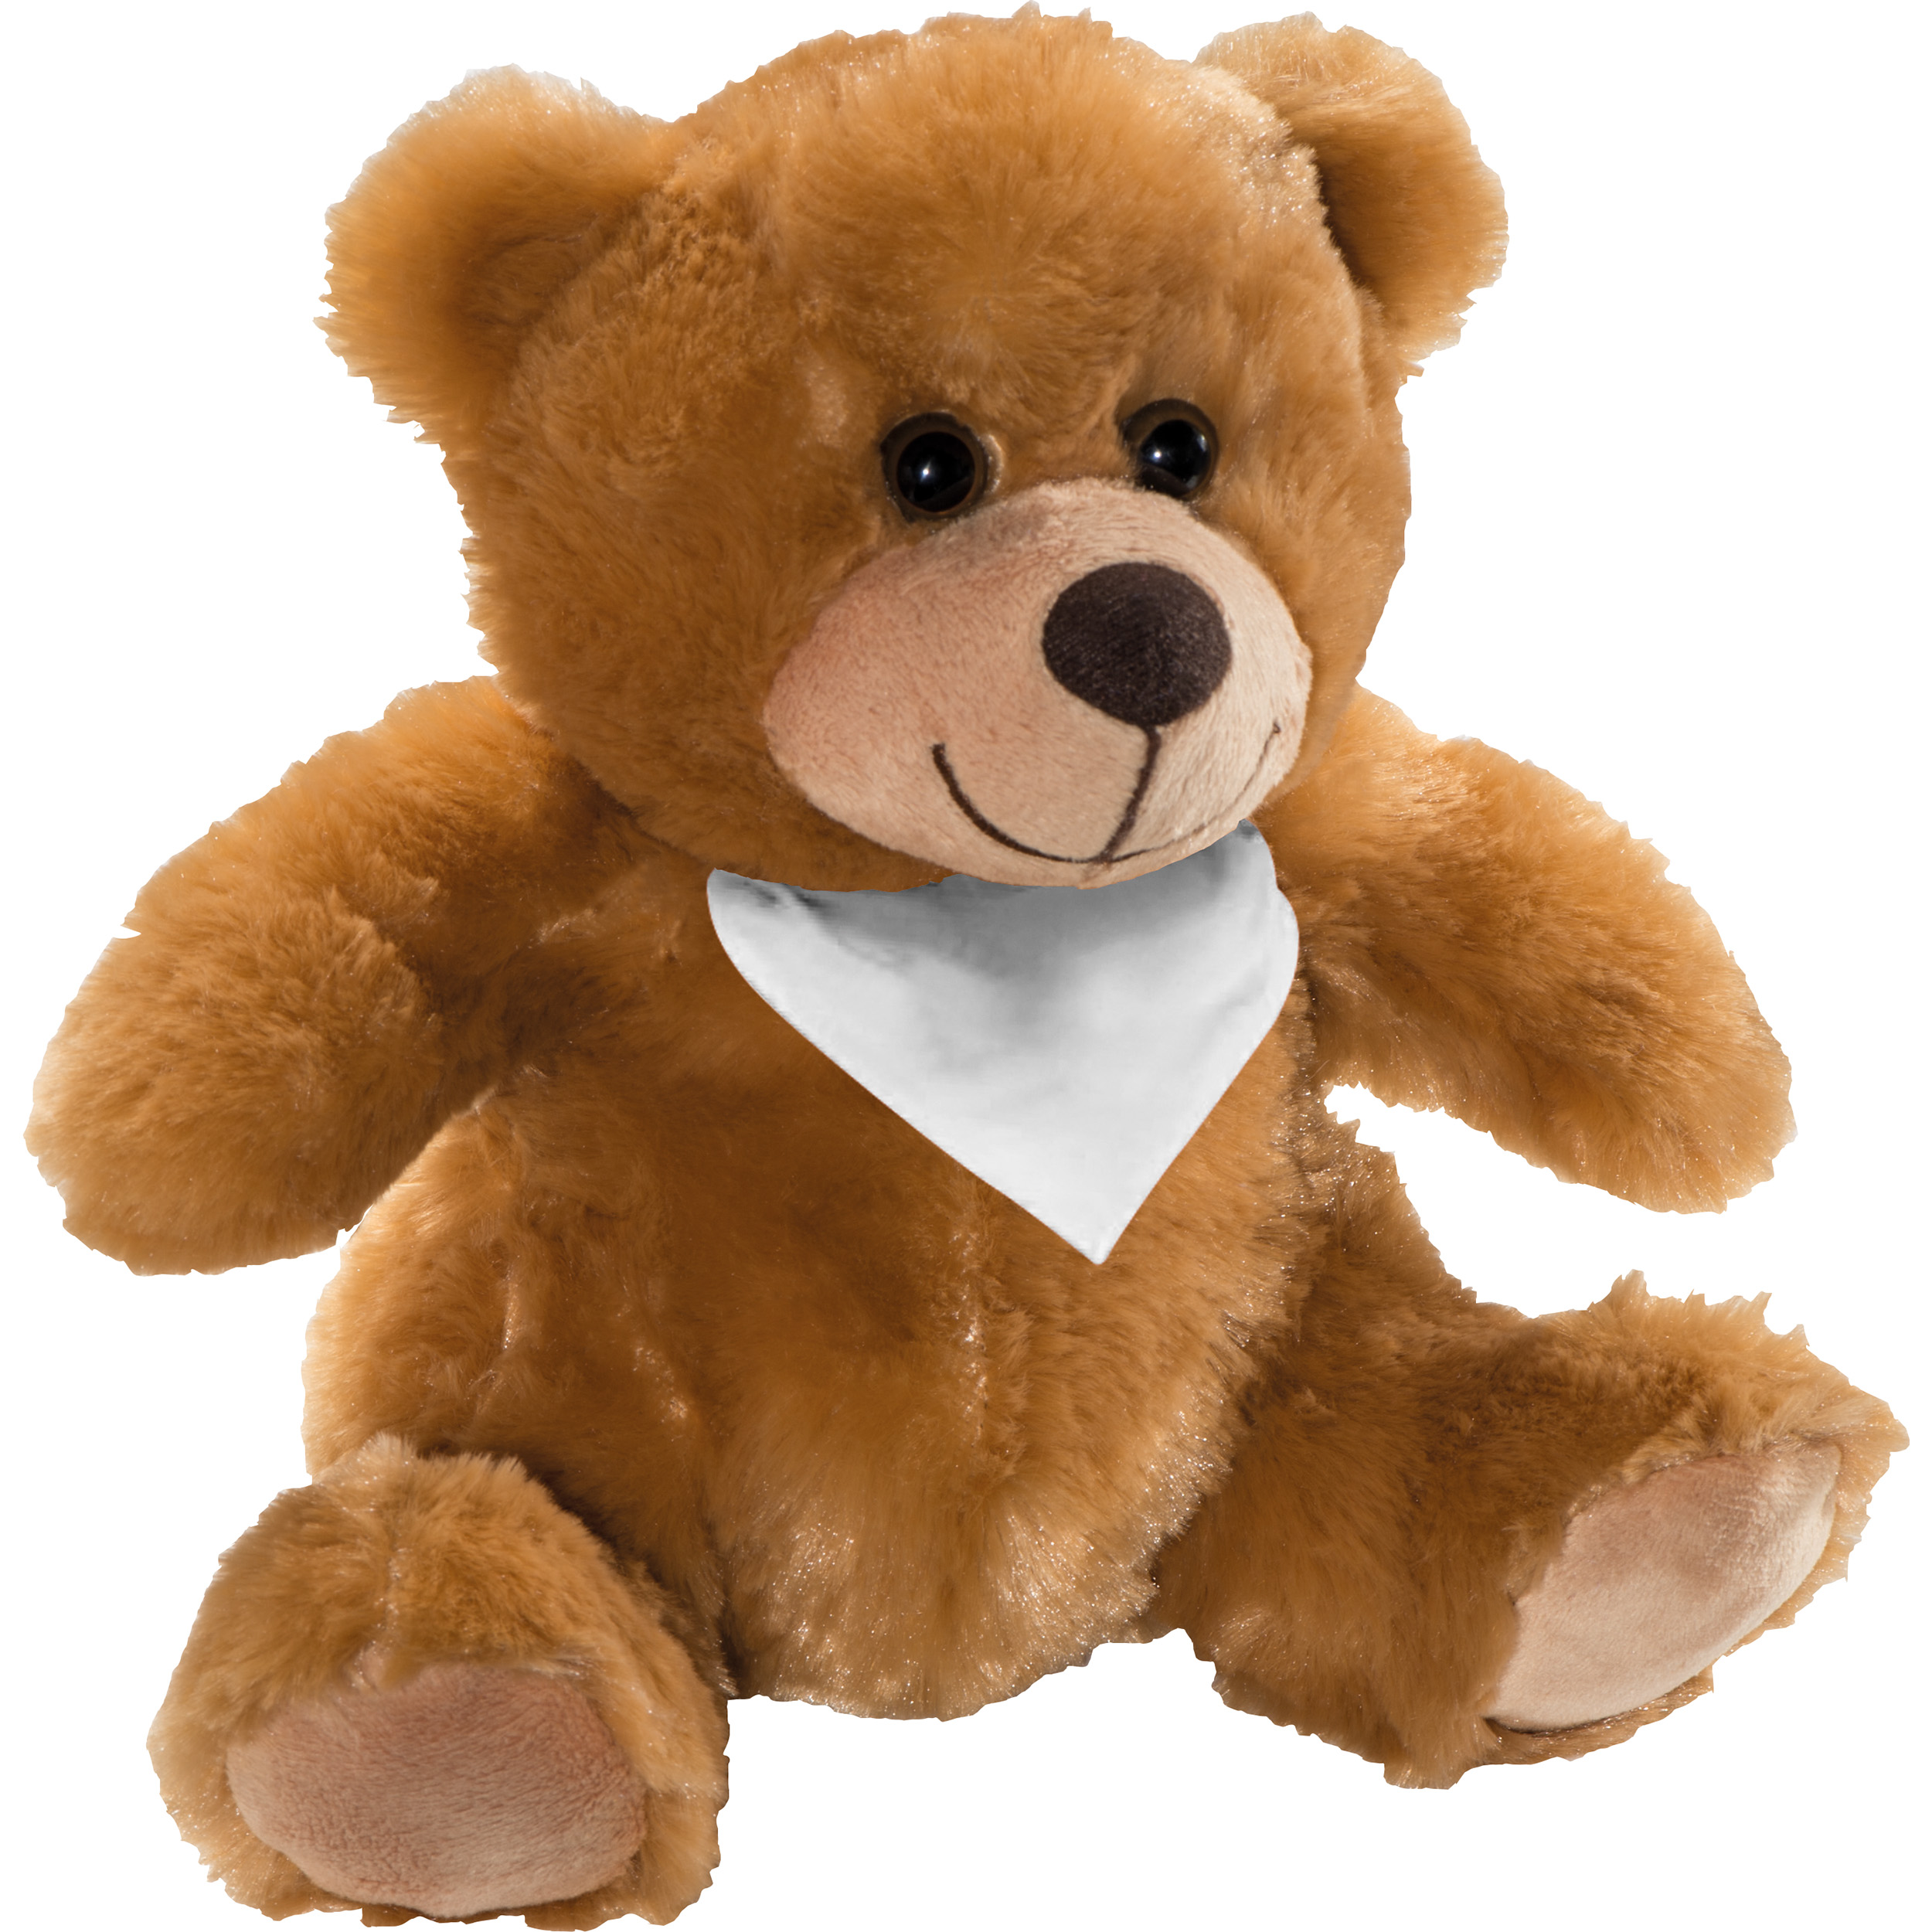 Comfortable Teddy Bear Plush - Great Totham - Prestwich